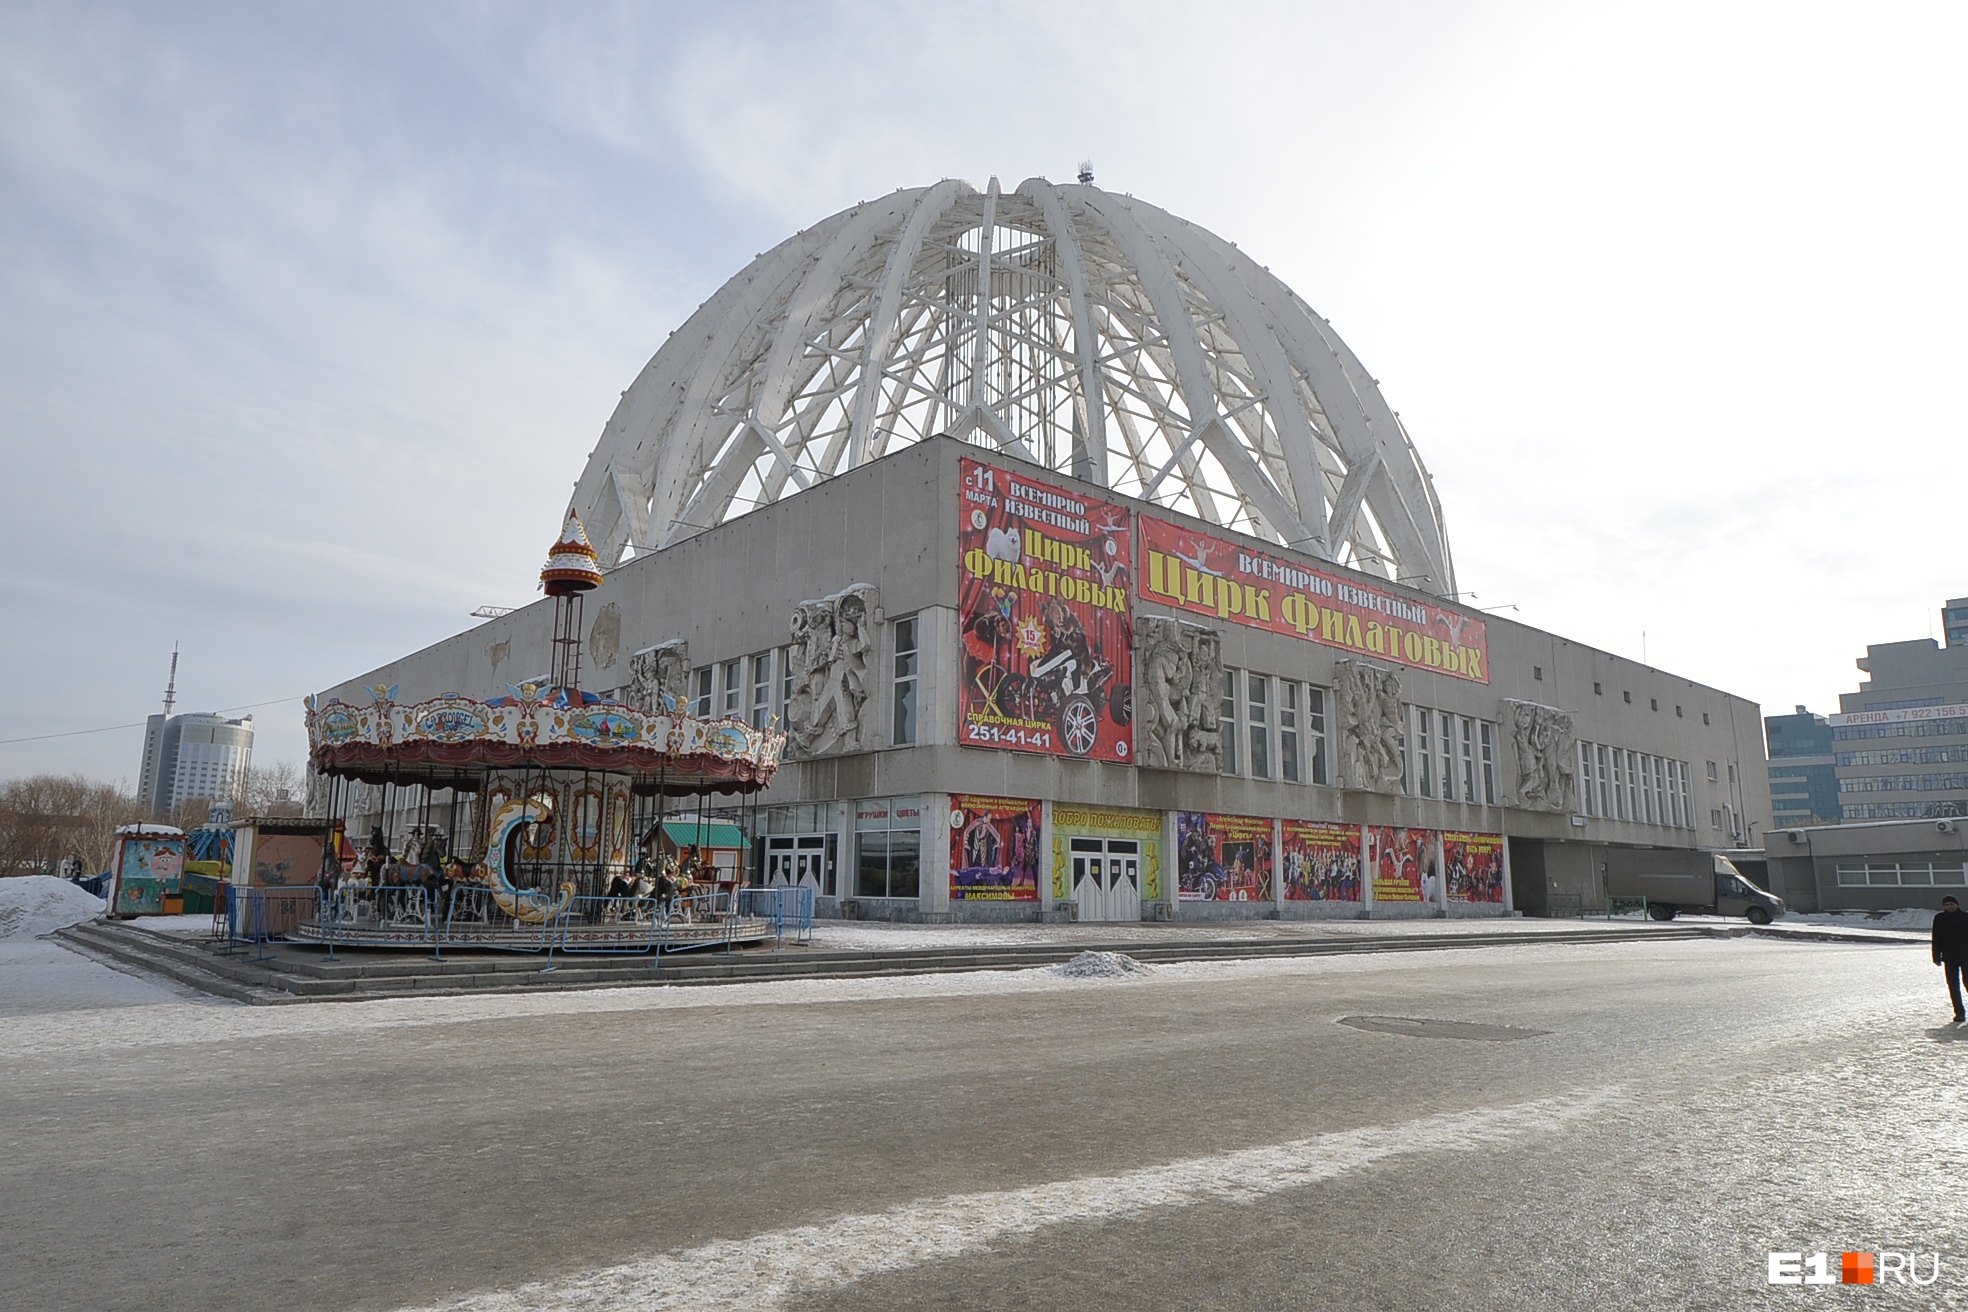 Здание цирка — один из главных архитектурных символов города